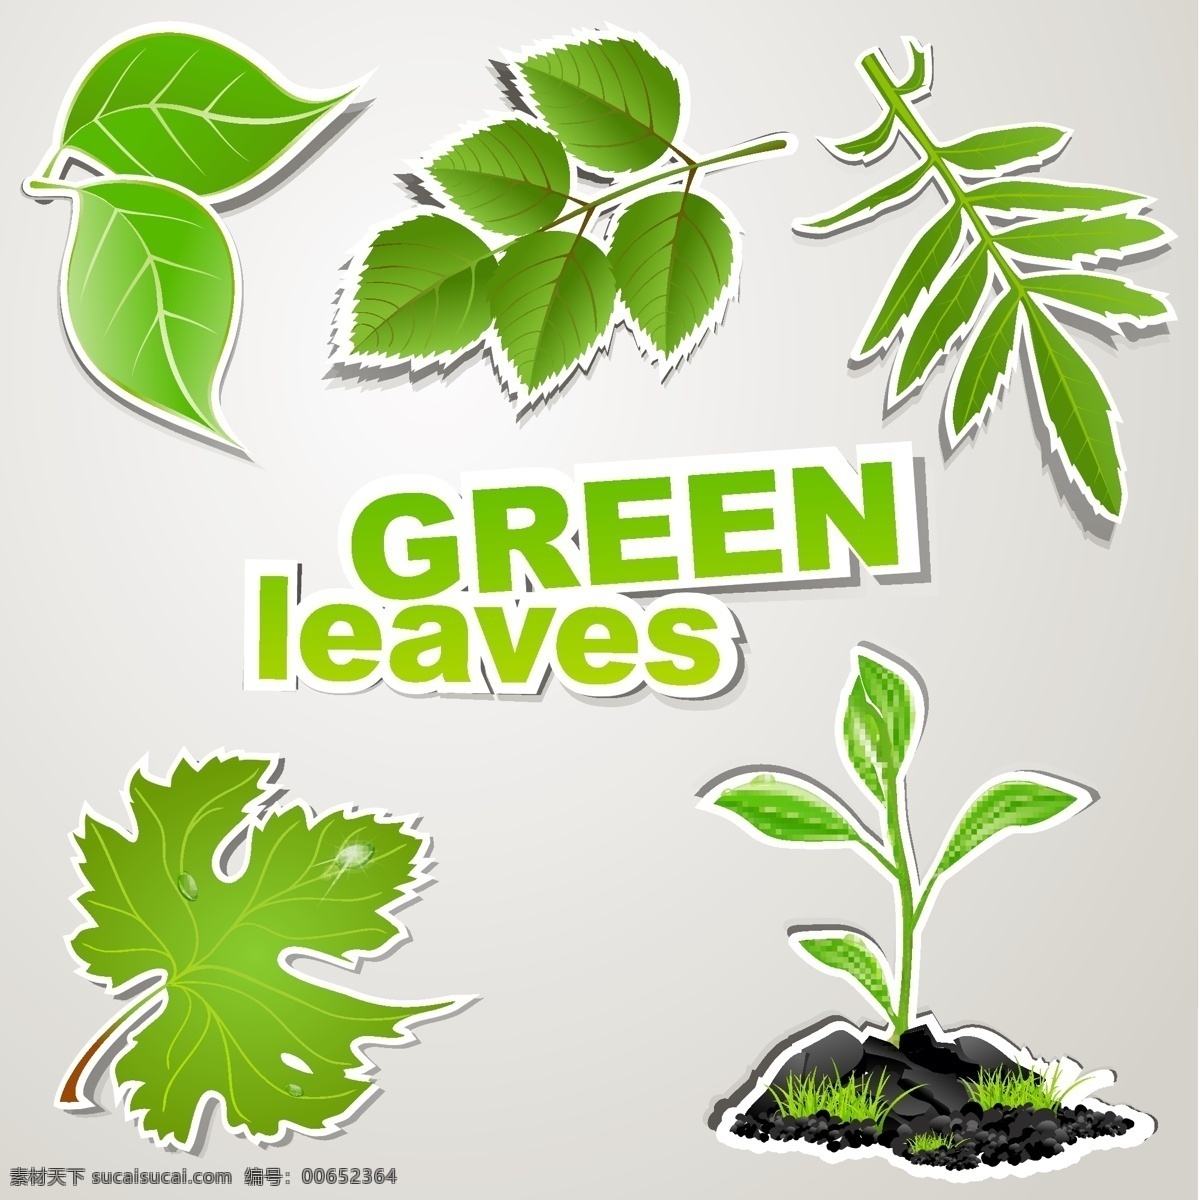 绿色环保 叶子 环保 绿色 树叶 素材图片 植物矢量图 矢量图 形态 花纹花边